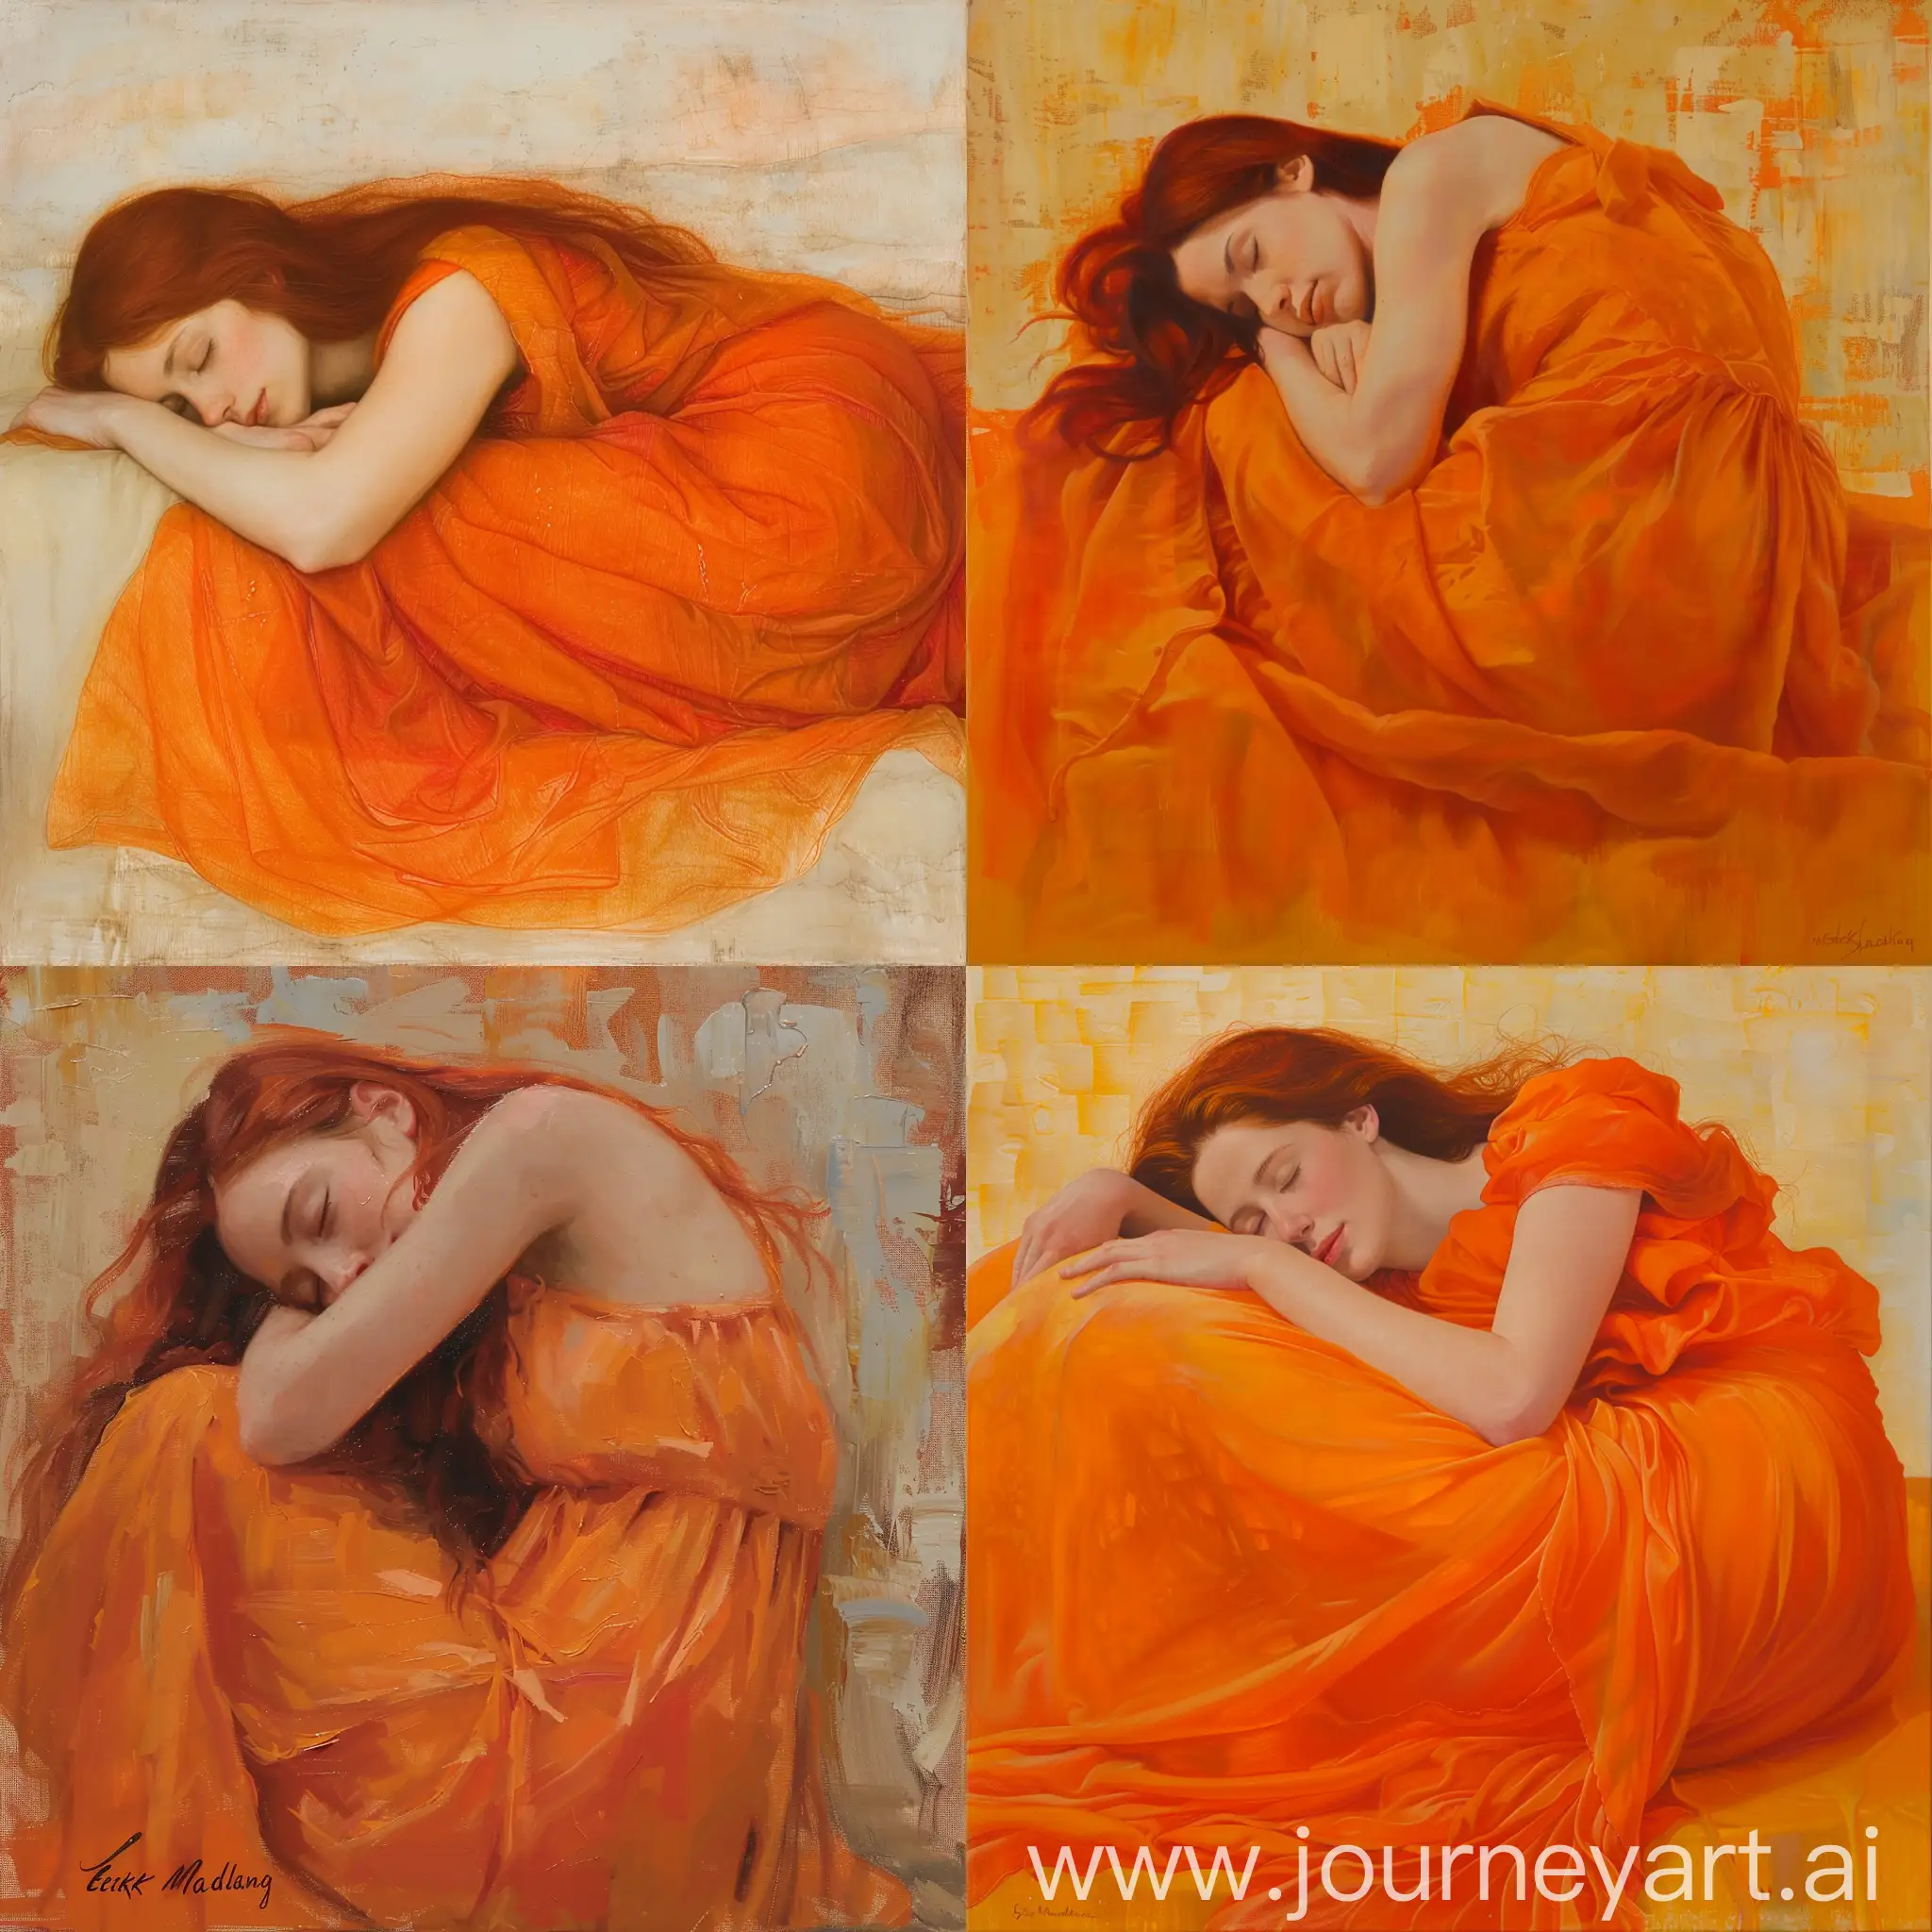 Sensual-Dream-Redheaded-Woman-Sleeping-in-Fiery-Orange-Gown